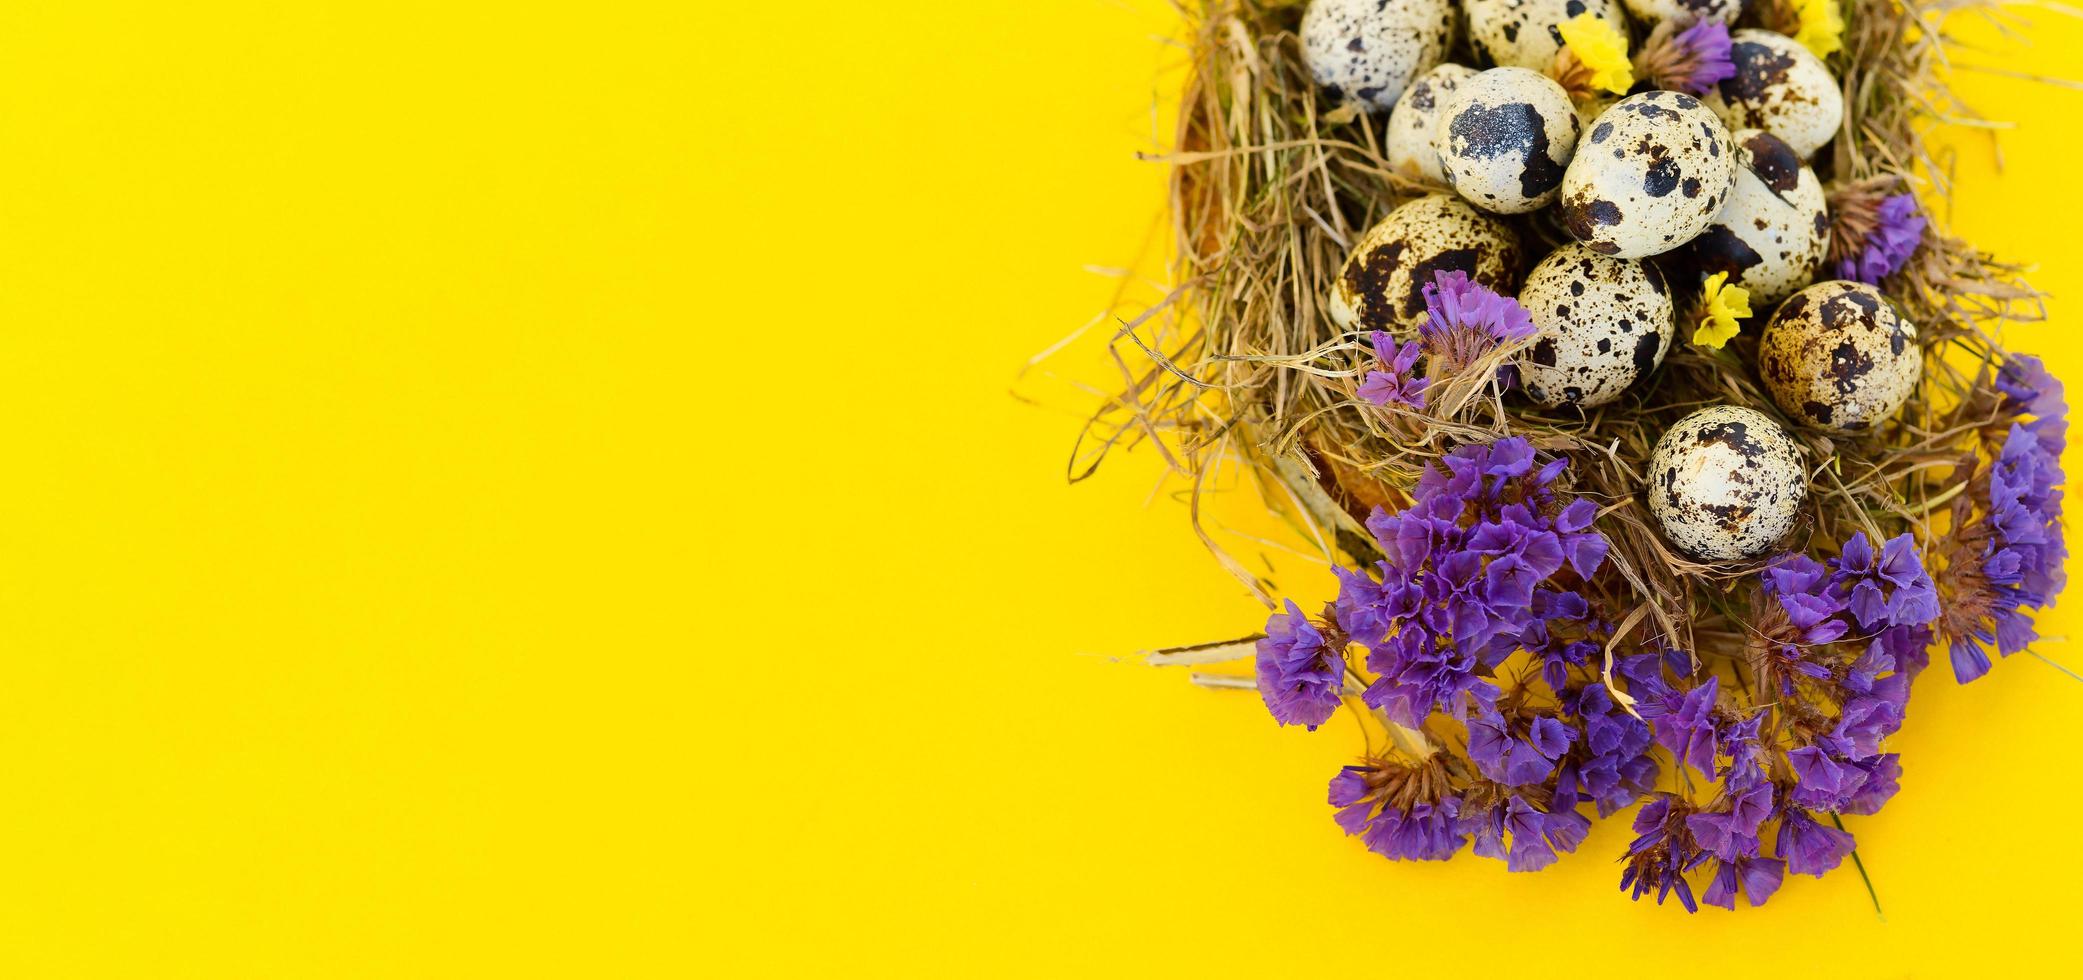 bandeira primavera cartão de saudação de páscoa com ovos de codorna com flores em um ninho em um fundo amarelo. comida saudável. foto